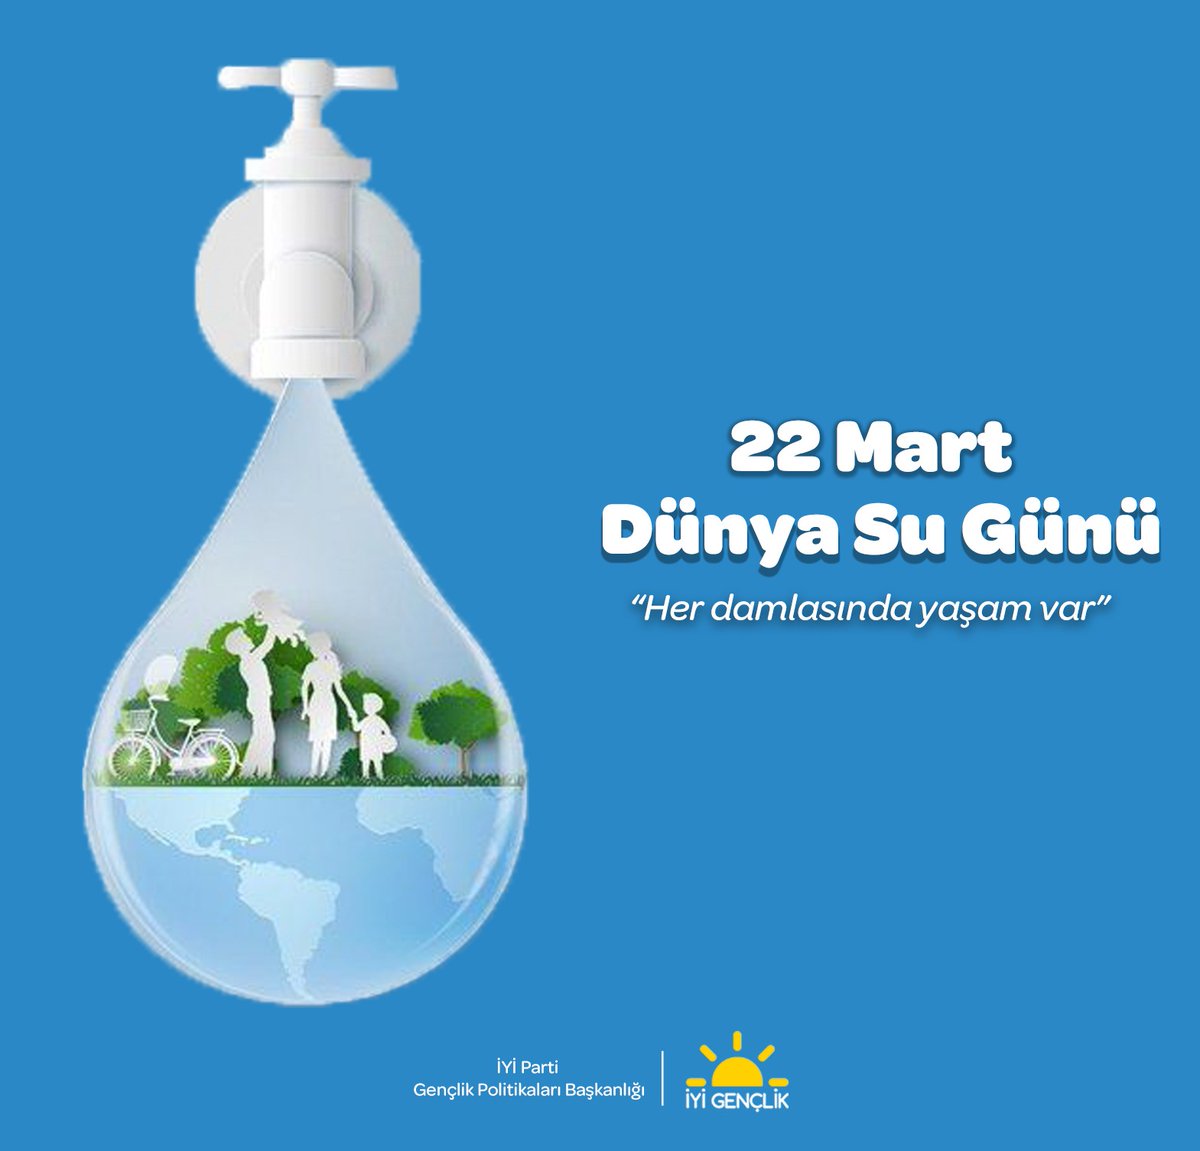 Su, hayatın kaynağıdır. Gelecekte su kıtlığı yaşamamak için bugün su kaynaklarımızı korumamız, aşırı tüketimin önüne geçmemiz gerekiyor. Suyuna sahip çık Türkiye! #22MartDünyaSuGünü #SuBiterseHerkesSusar